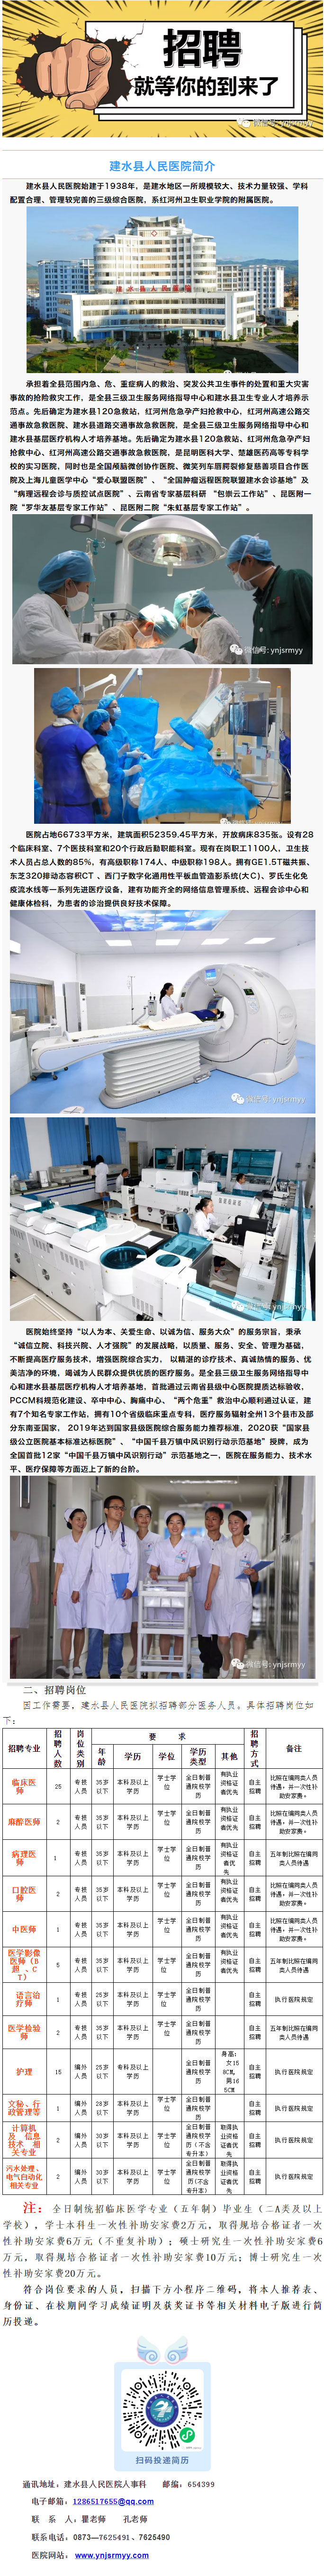 建水县人民医院2021年招聘信息